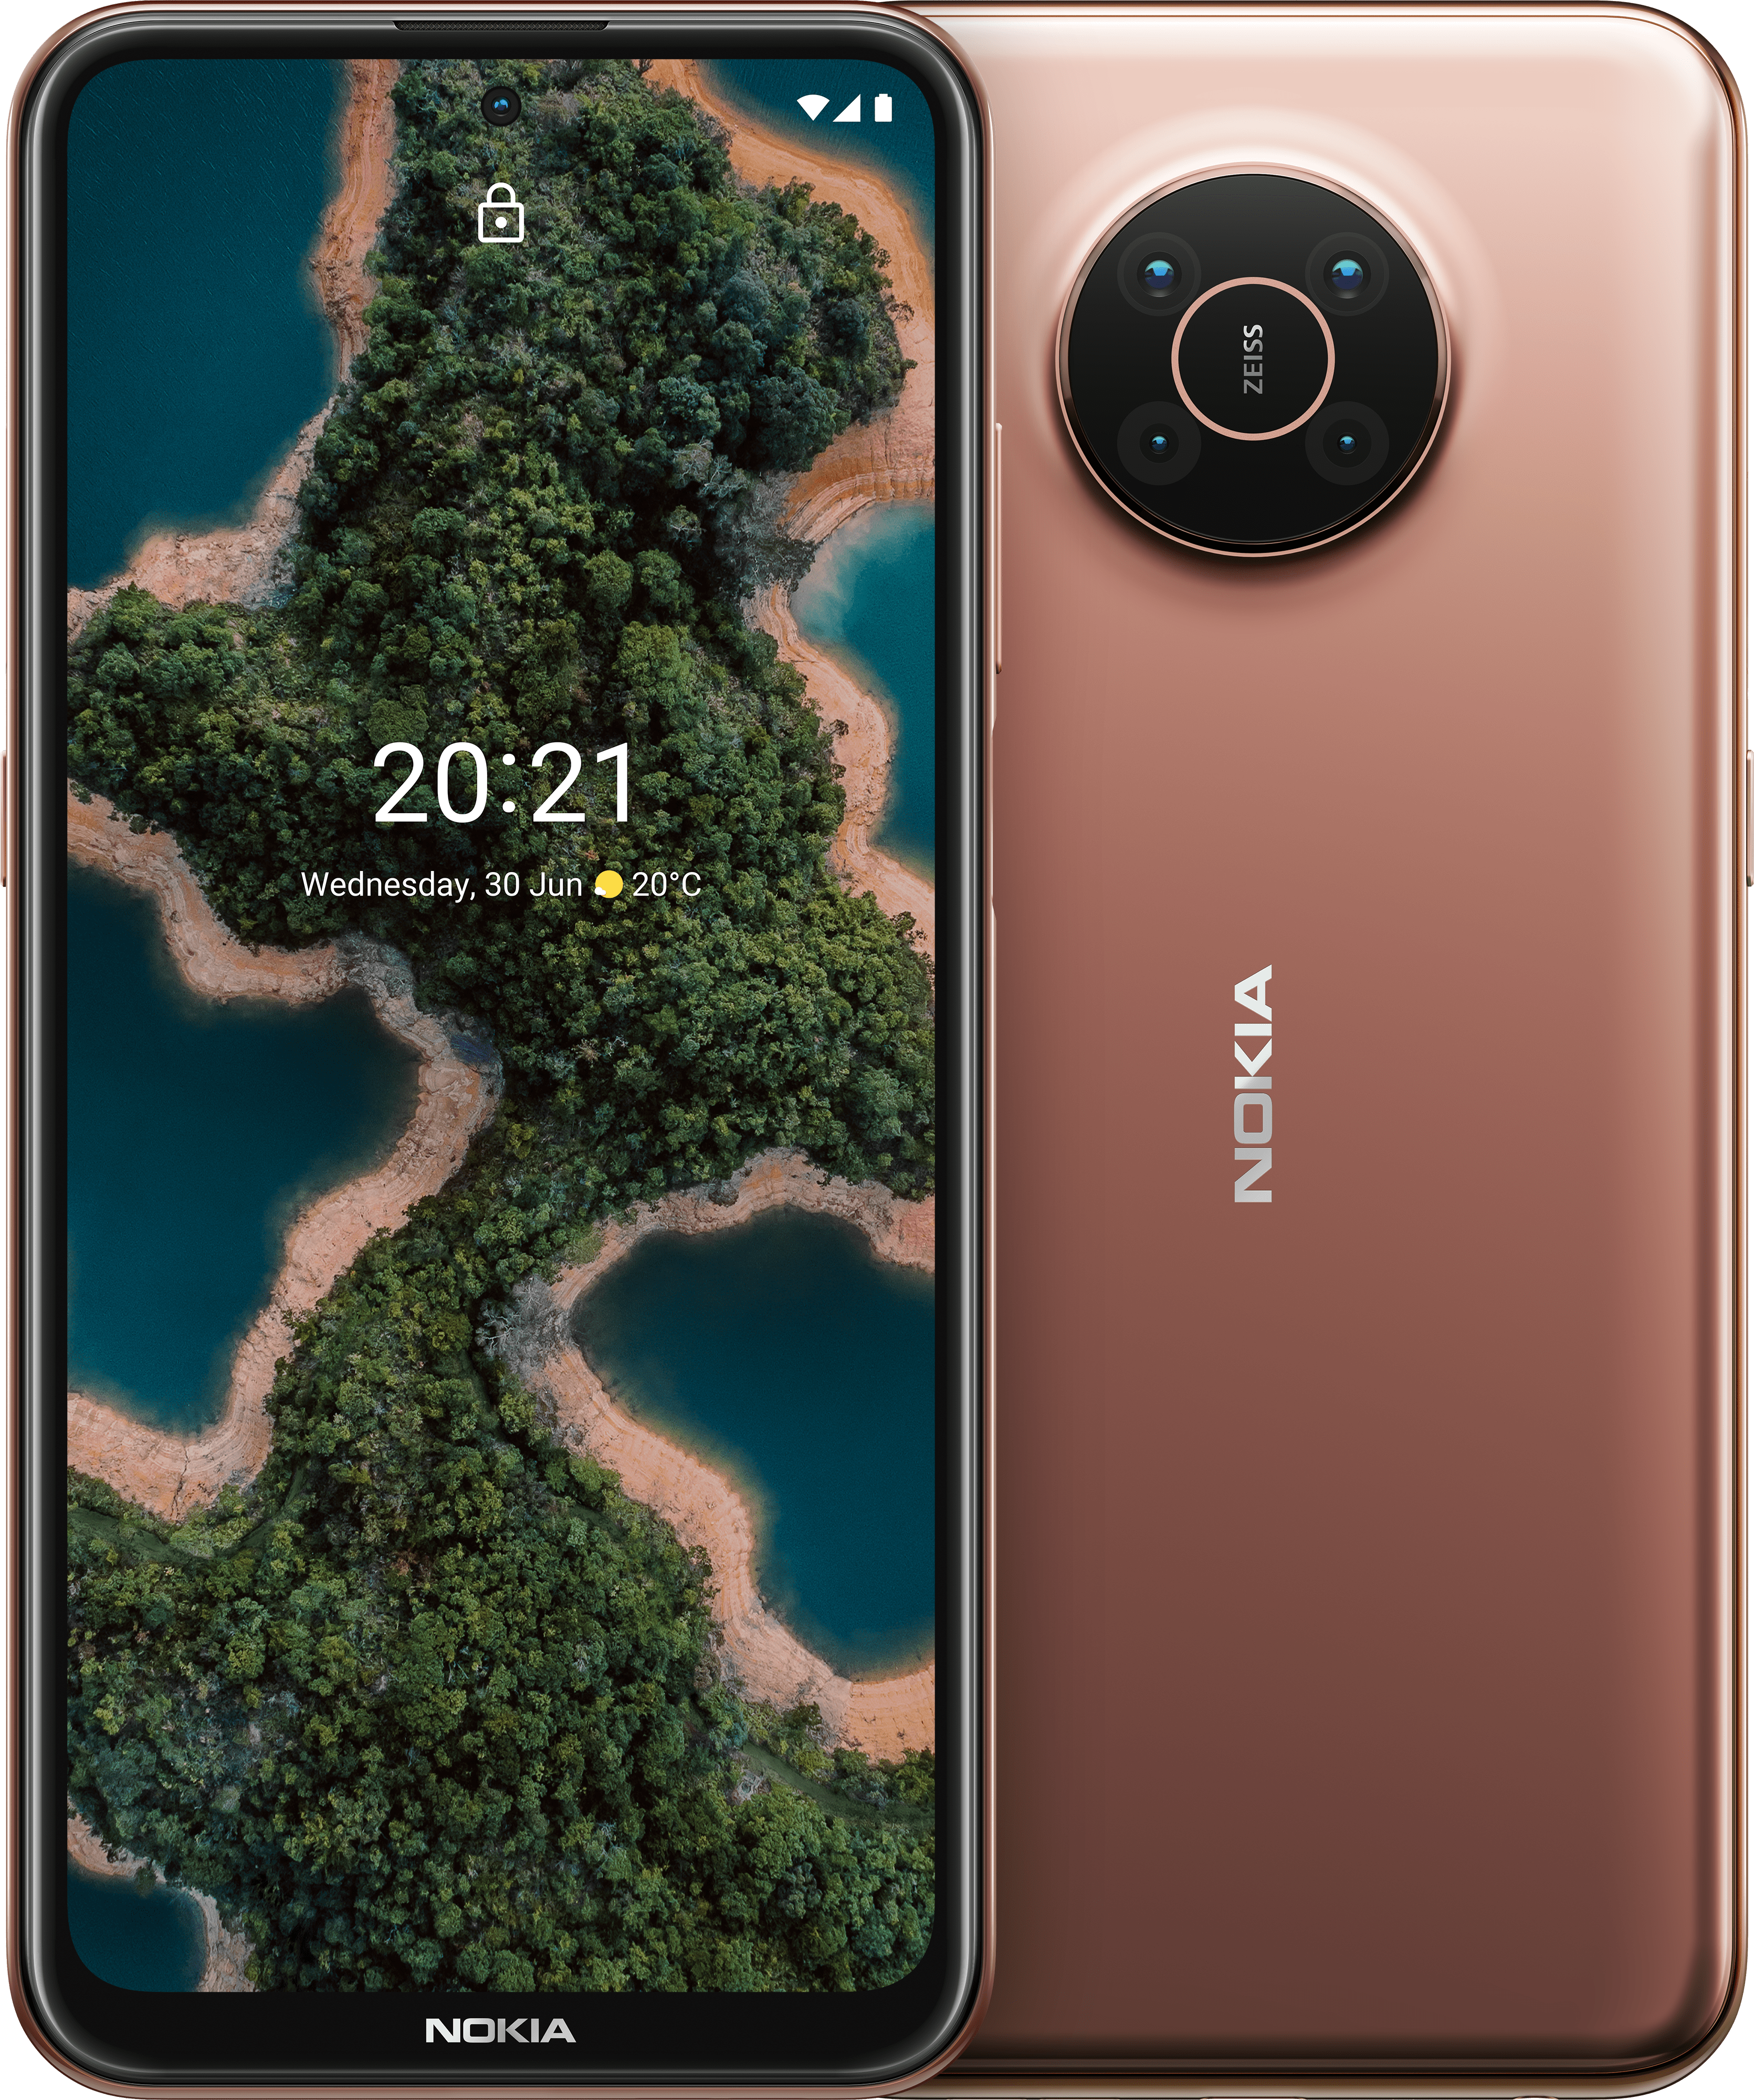 2021 nokia android www.emanuelevans.com: Nokia